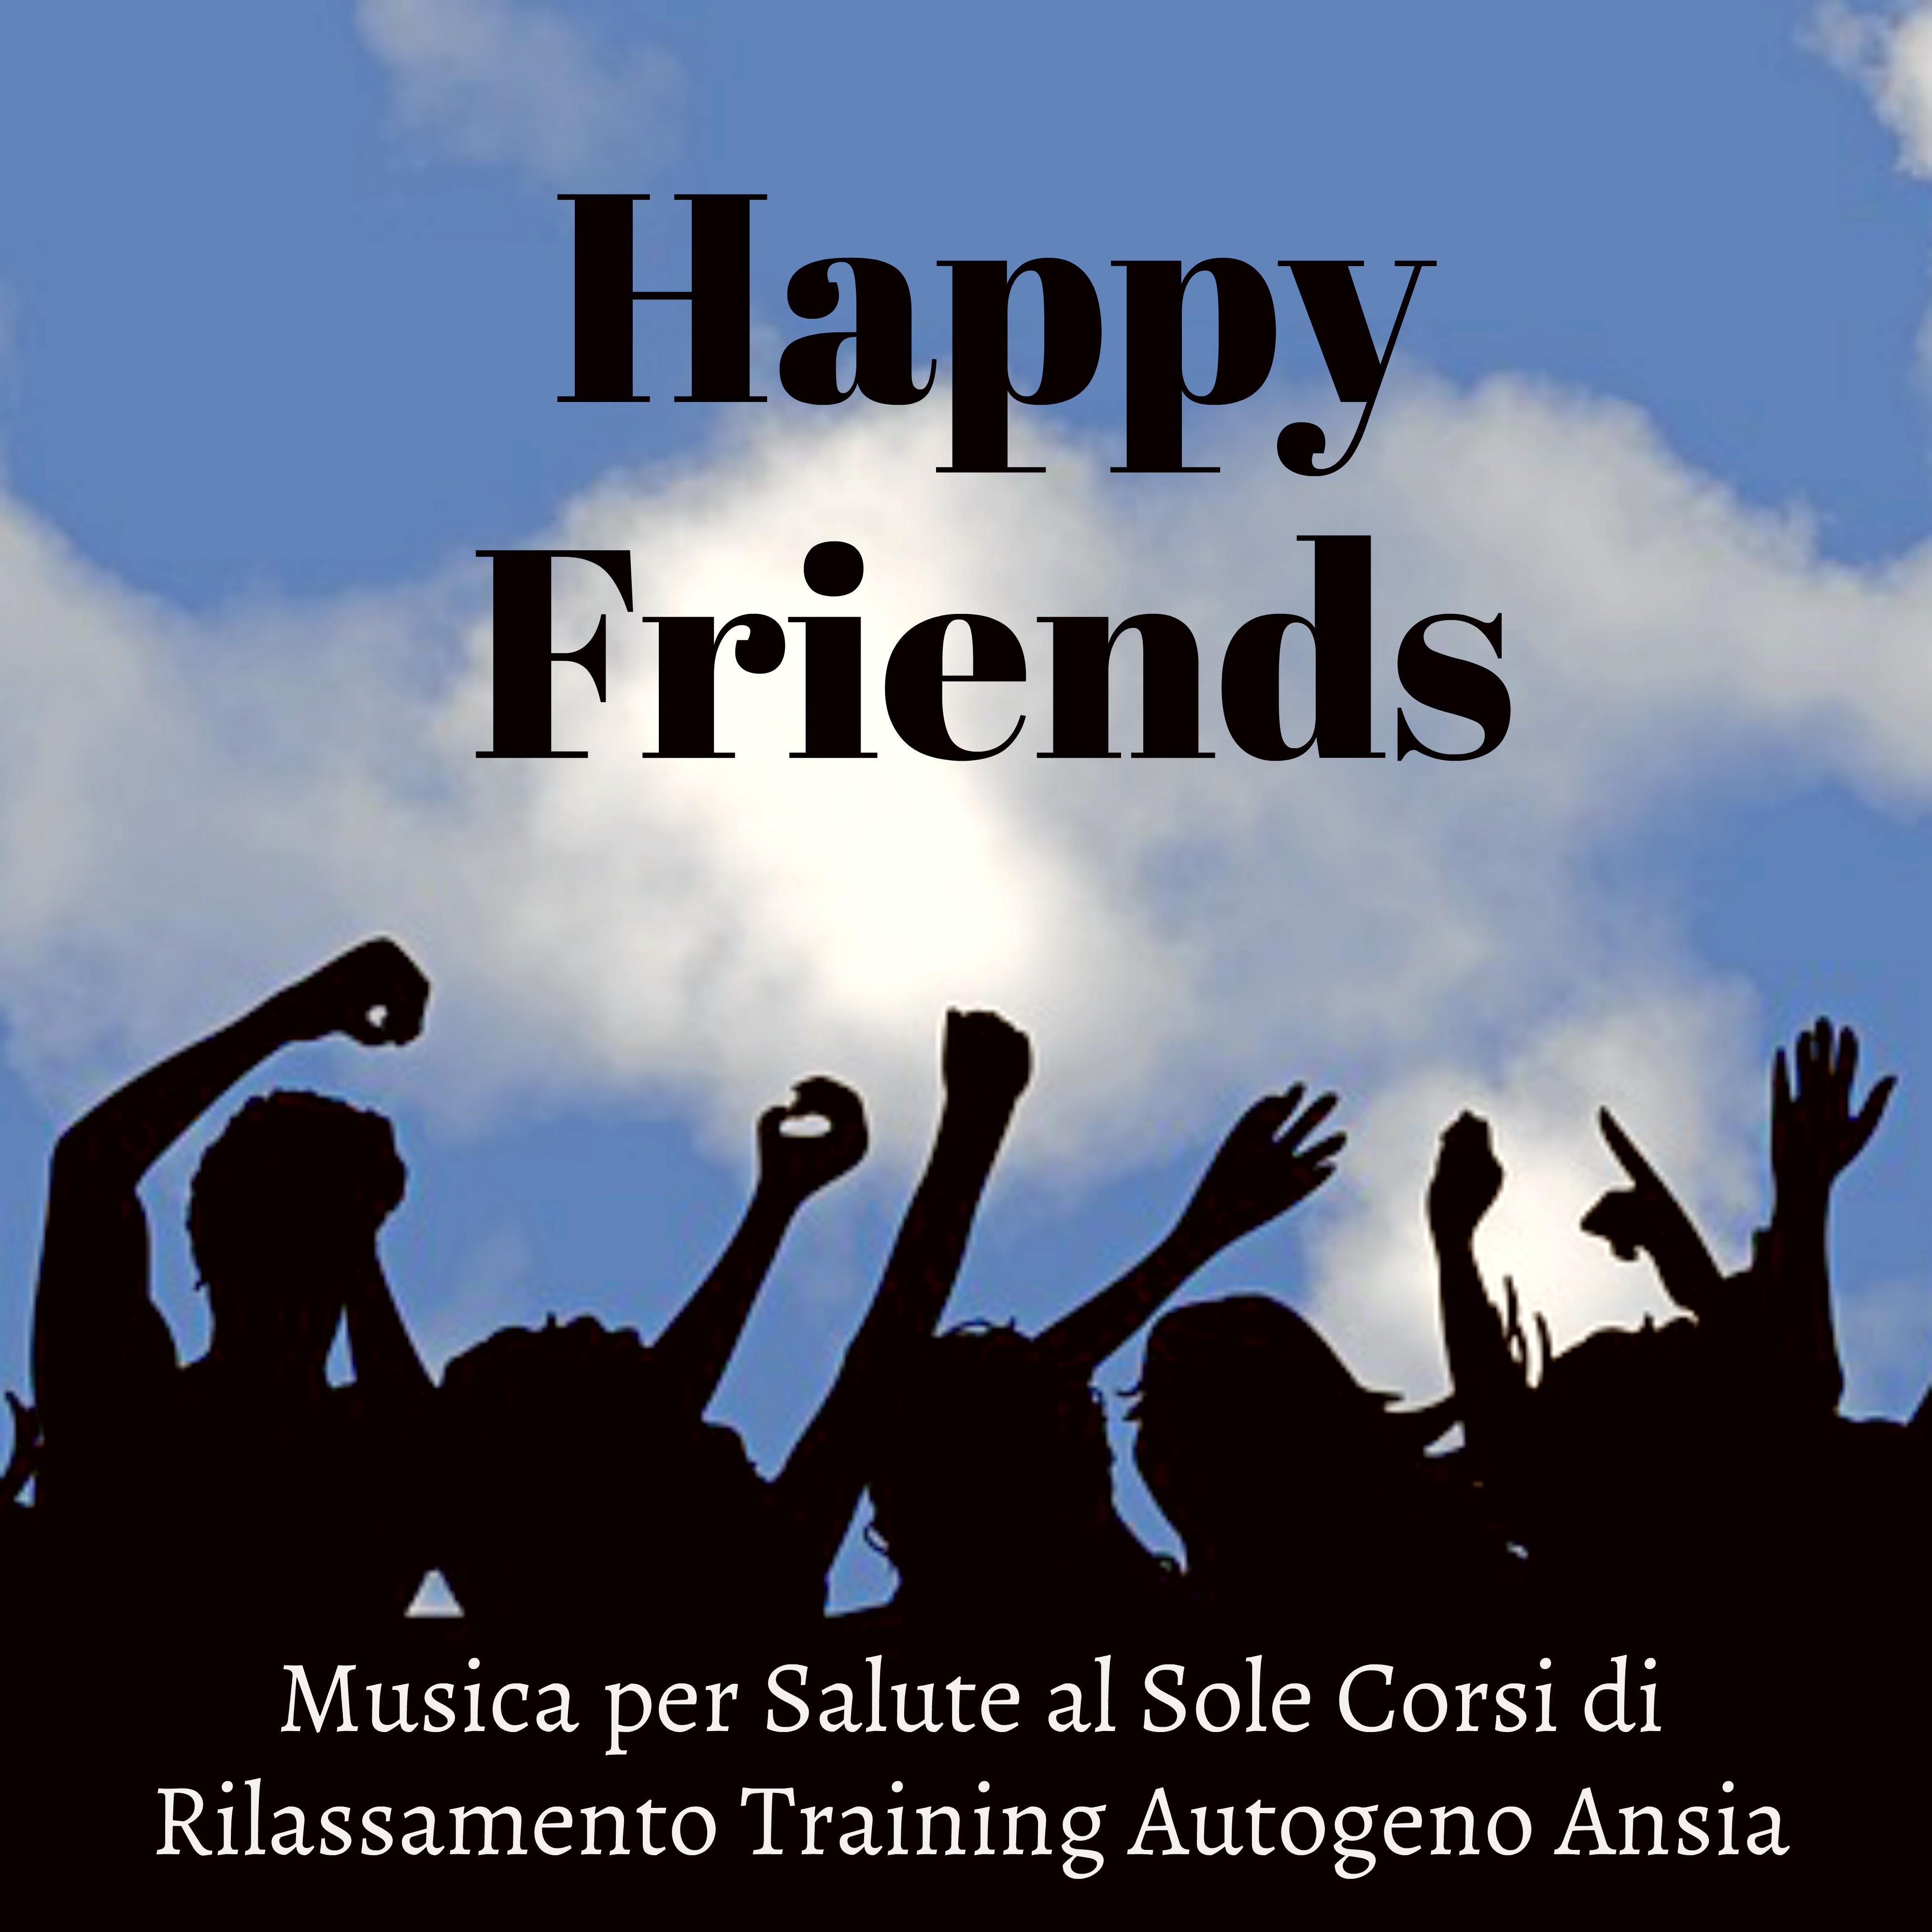 Happy Friends - Musica New Age della Natura per Salute al Sole Corsi di Rilassamento Training Autogeno Ansia con Suoni della Natura Strumentali Rilassanti